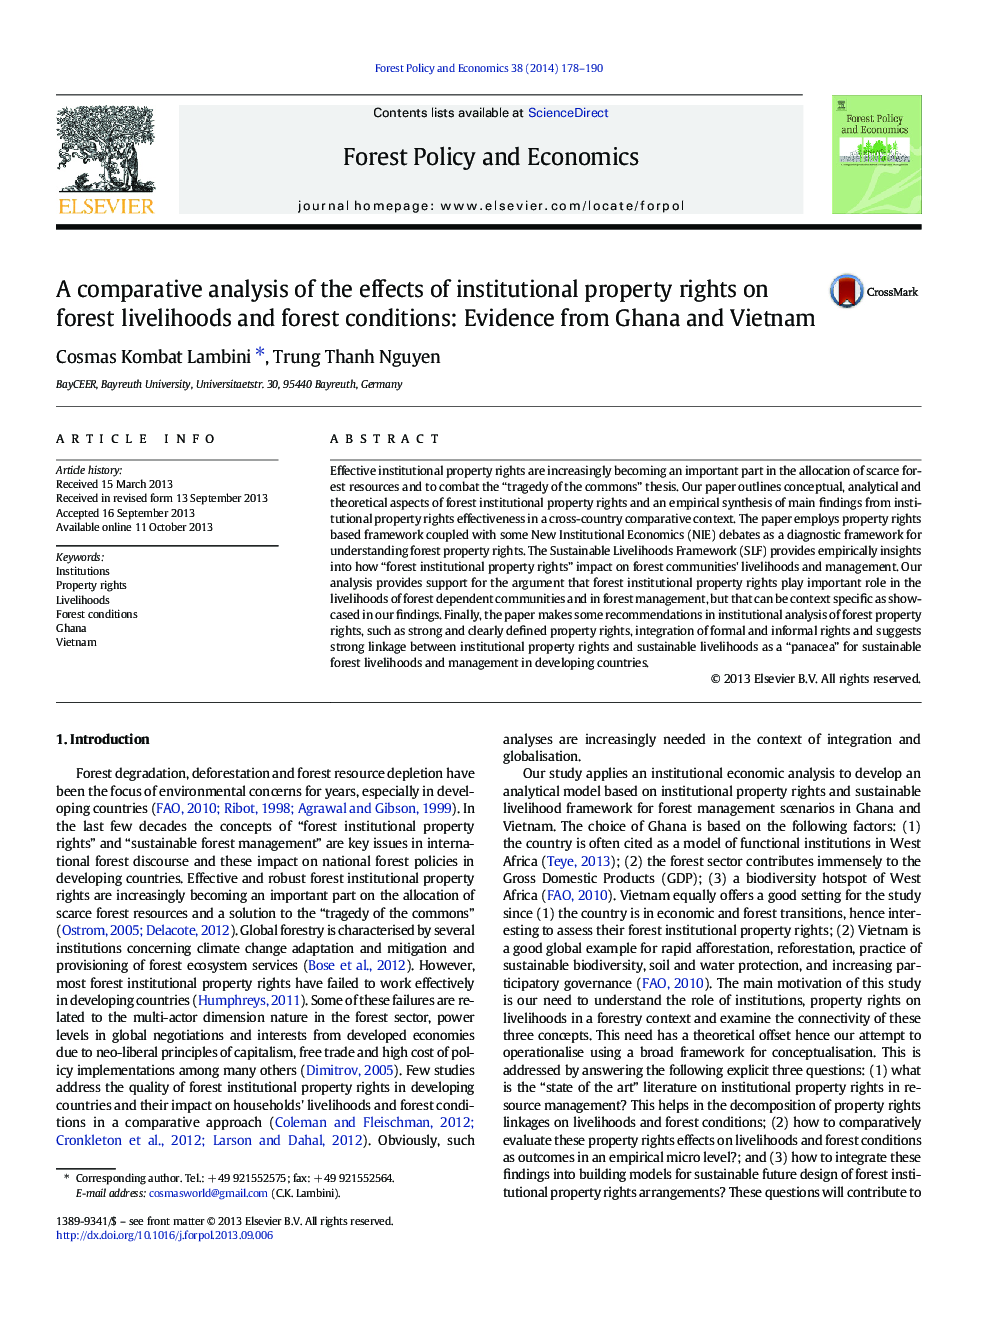 تجزیه و تحلیل تطبیقی ​​اثرات حقوق مالکیت نهادی بر معیشت و شرایط جنگل جنگل: شواهد از غنا و ویتنام 